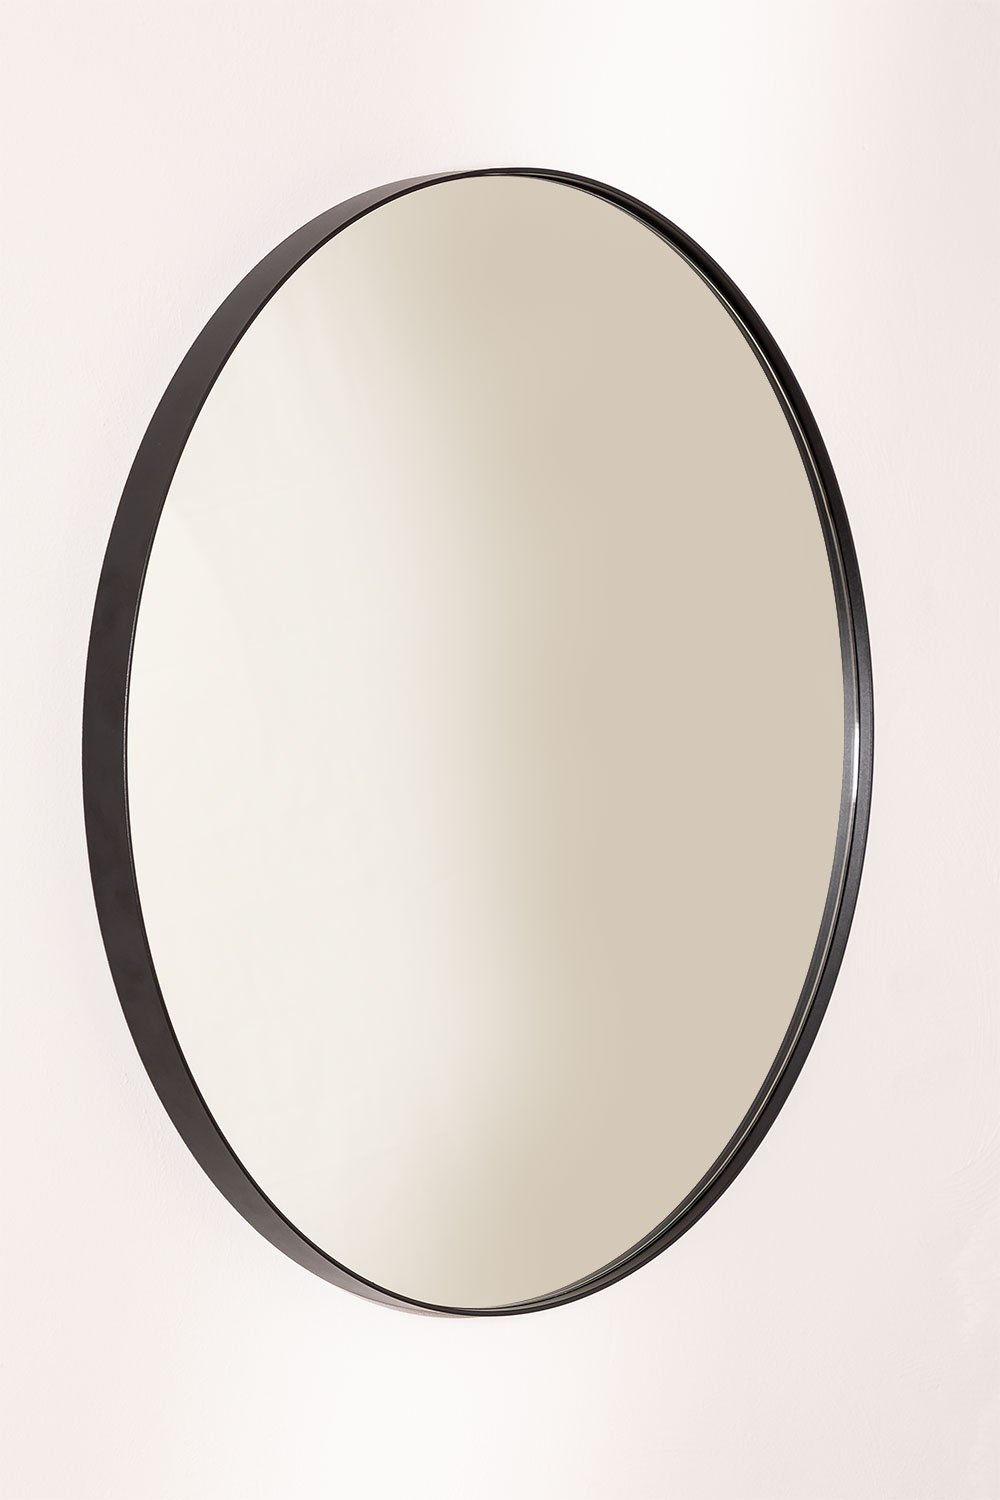 Specchio da parete da bagno rotondo in metallo (Ø60,5 cm) Gon, immagine della galleria 1